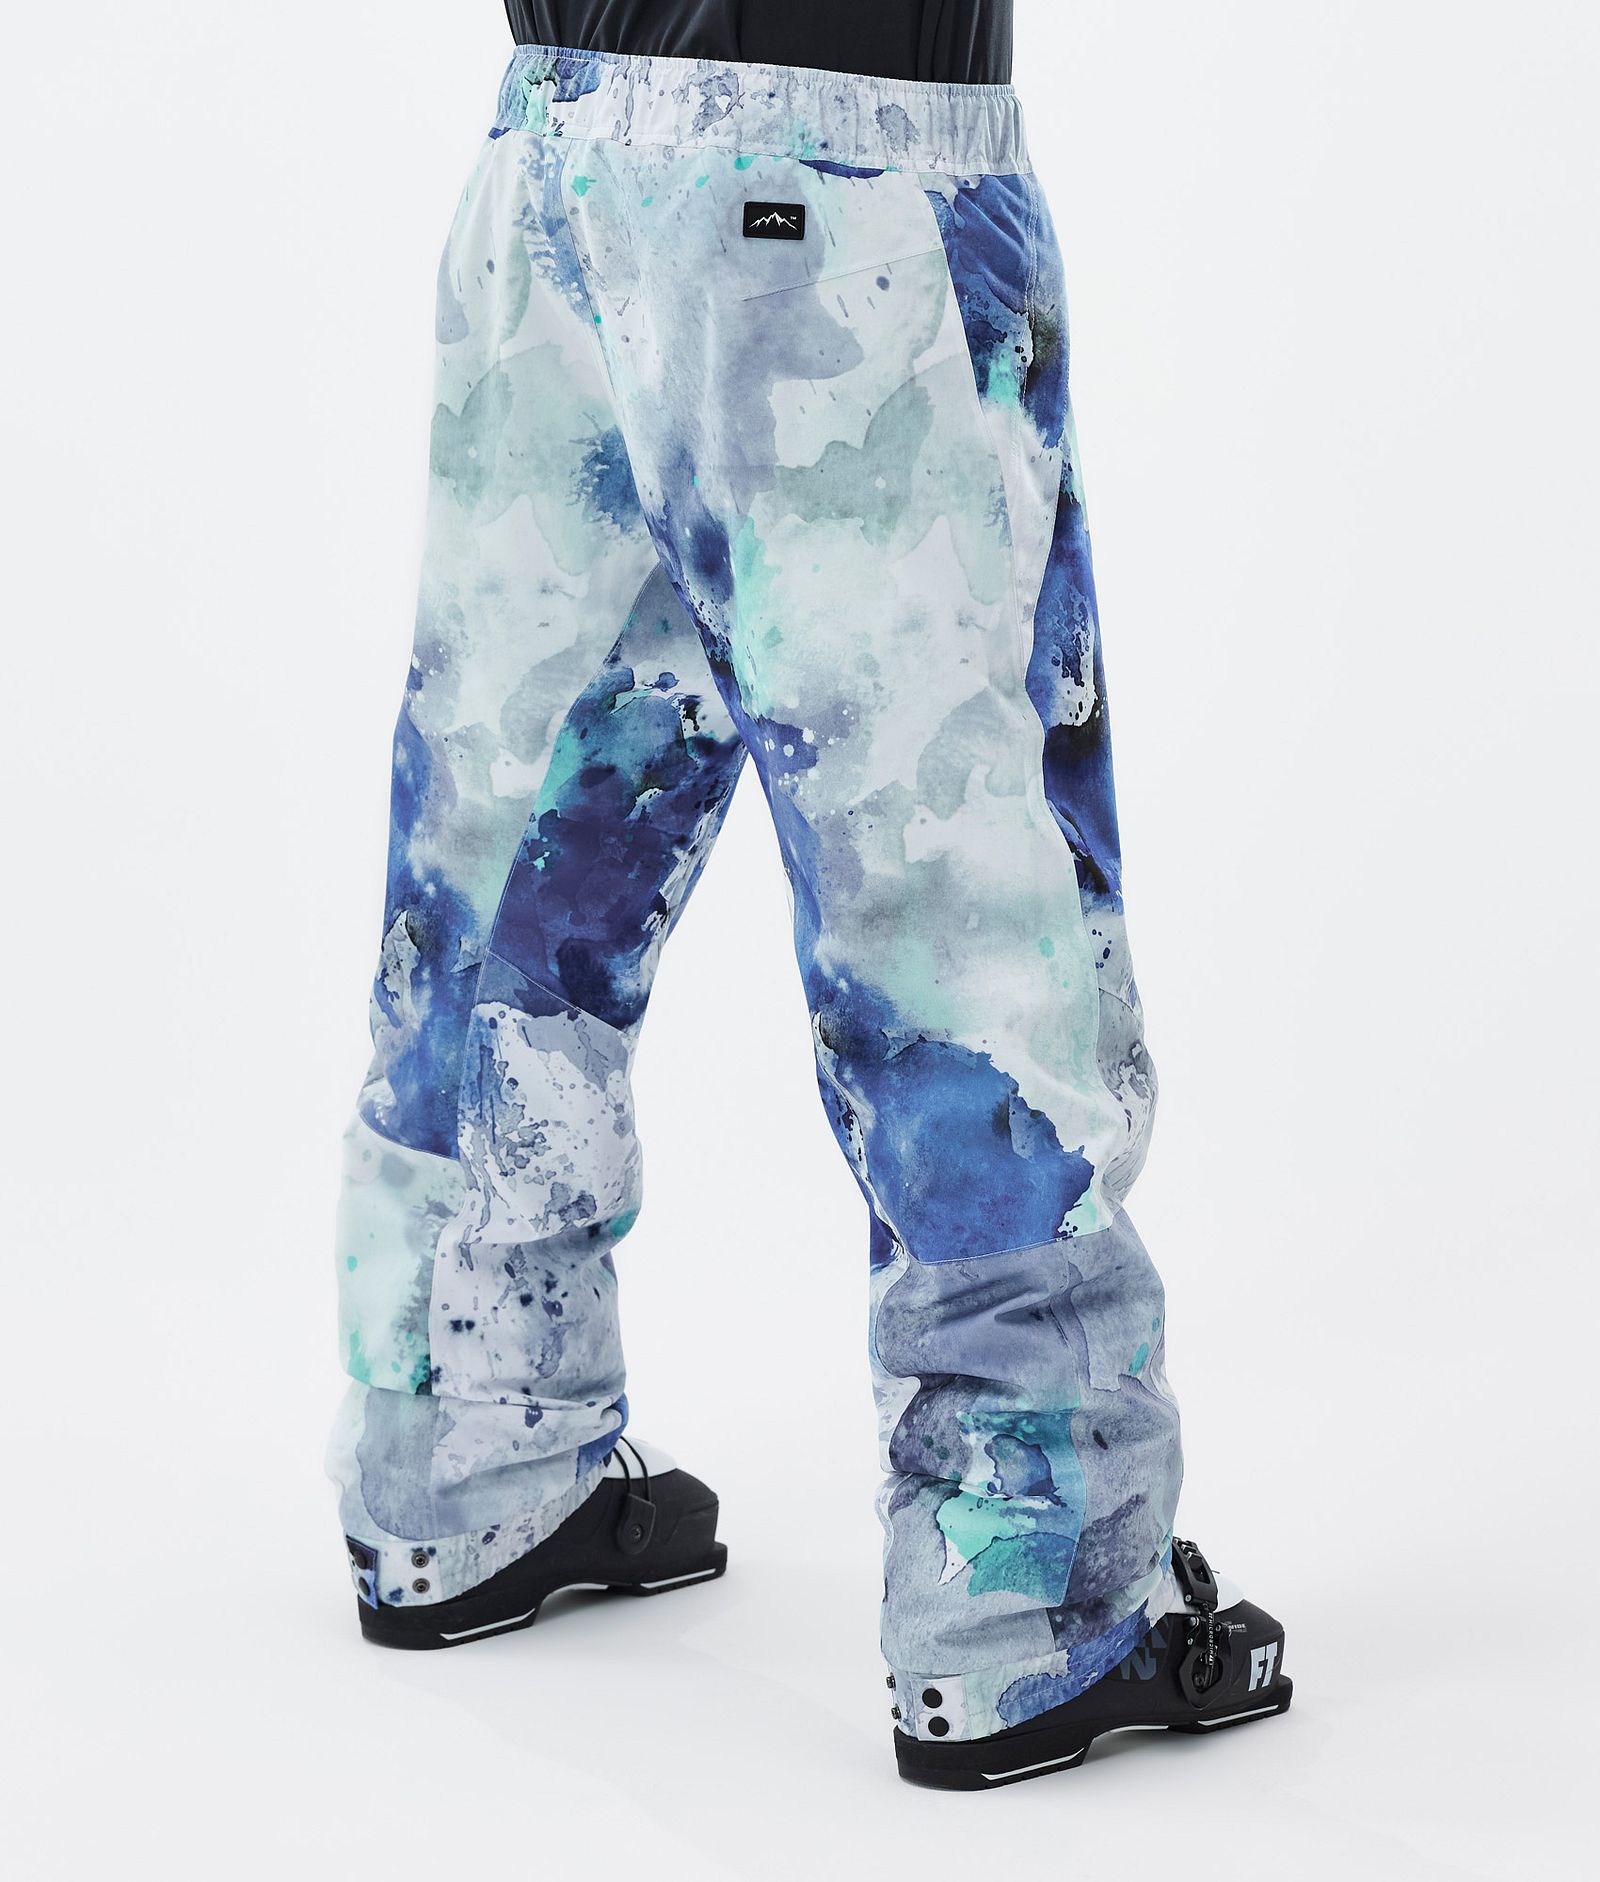 Blizzard Pantaloni Sci Uomo Spray Blue Green, Immagine 4 di 5